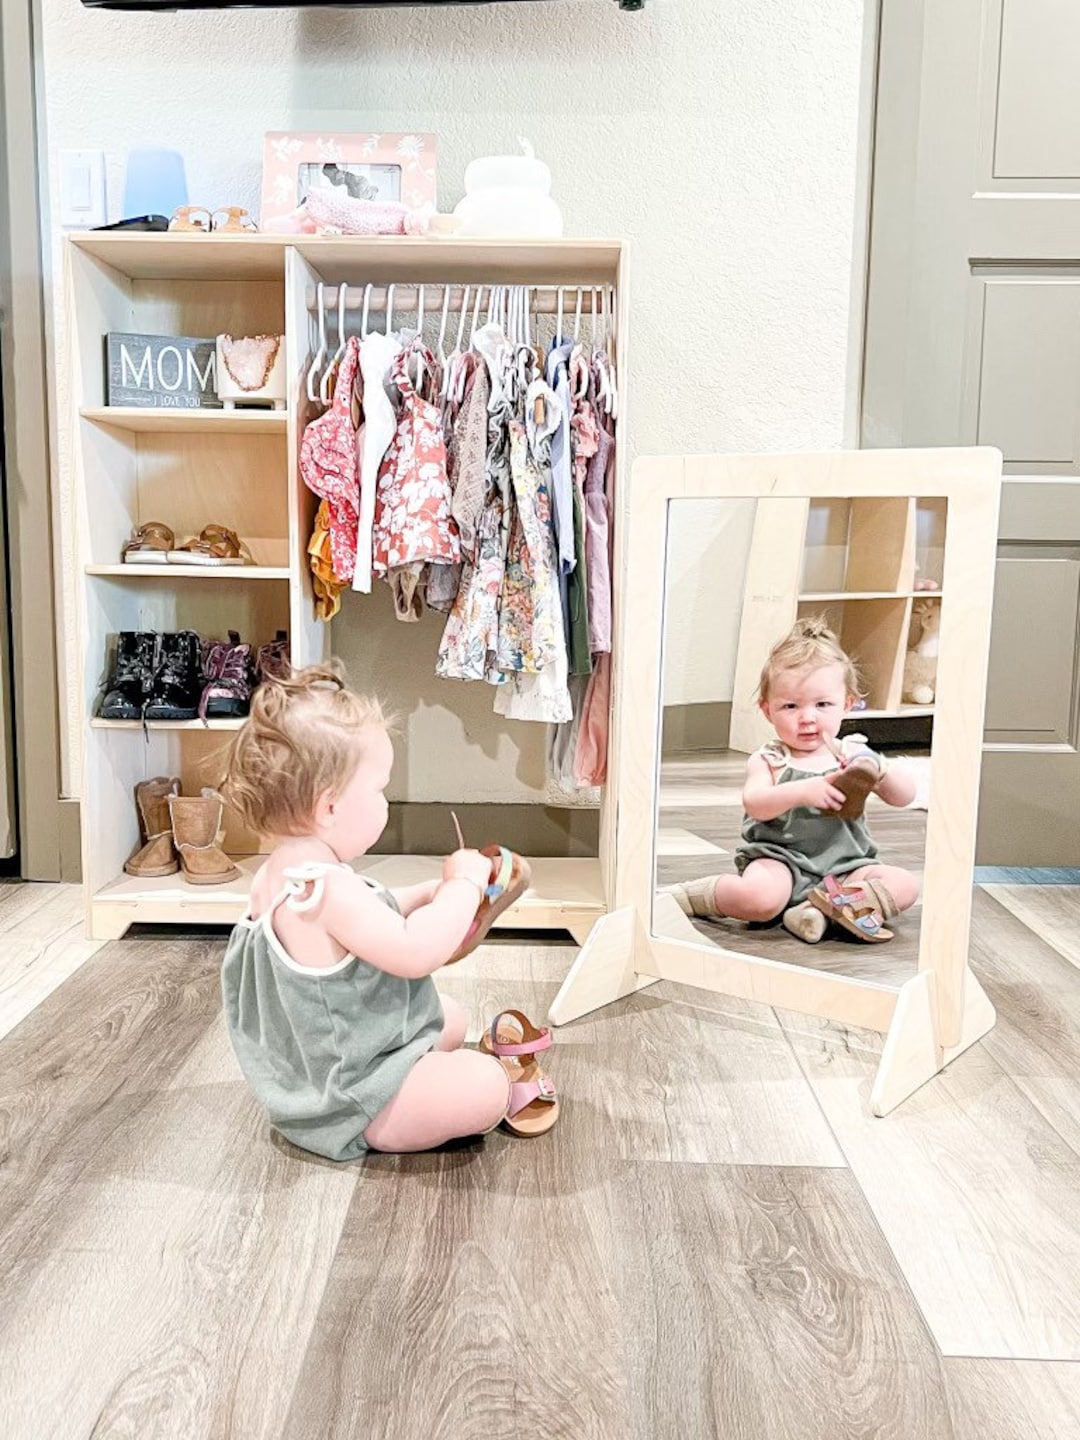 Specchio per bambini Specchio Montessori regolabile Specchio da pavimento  in legno per la cura personale dei bambini Giocattoli Montessori Specchio